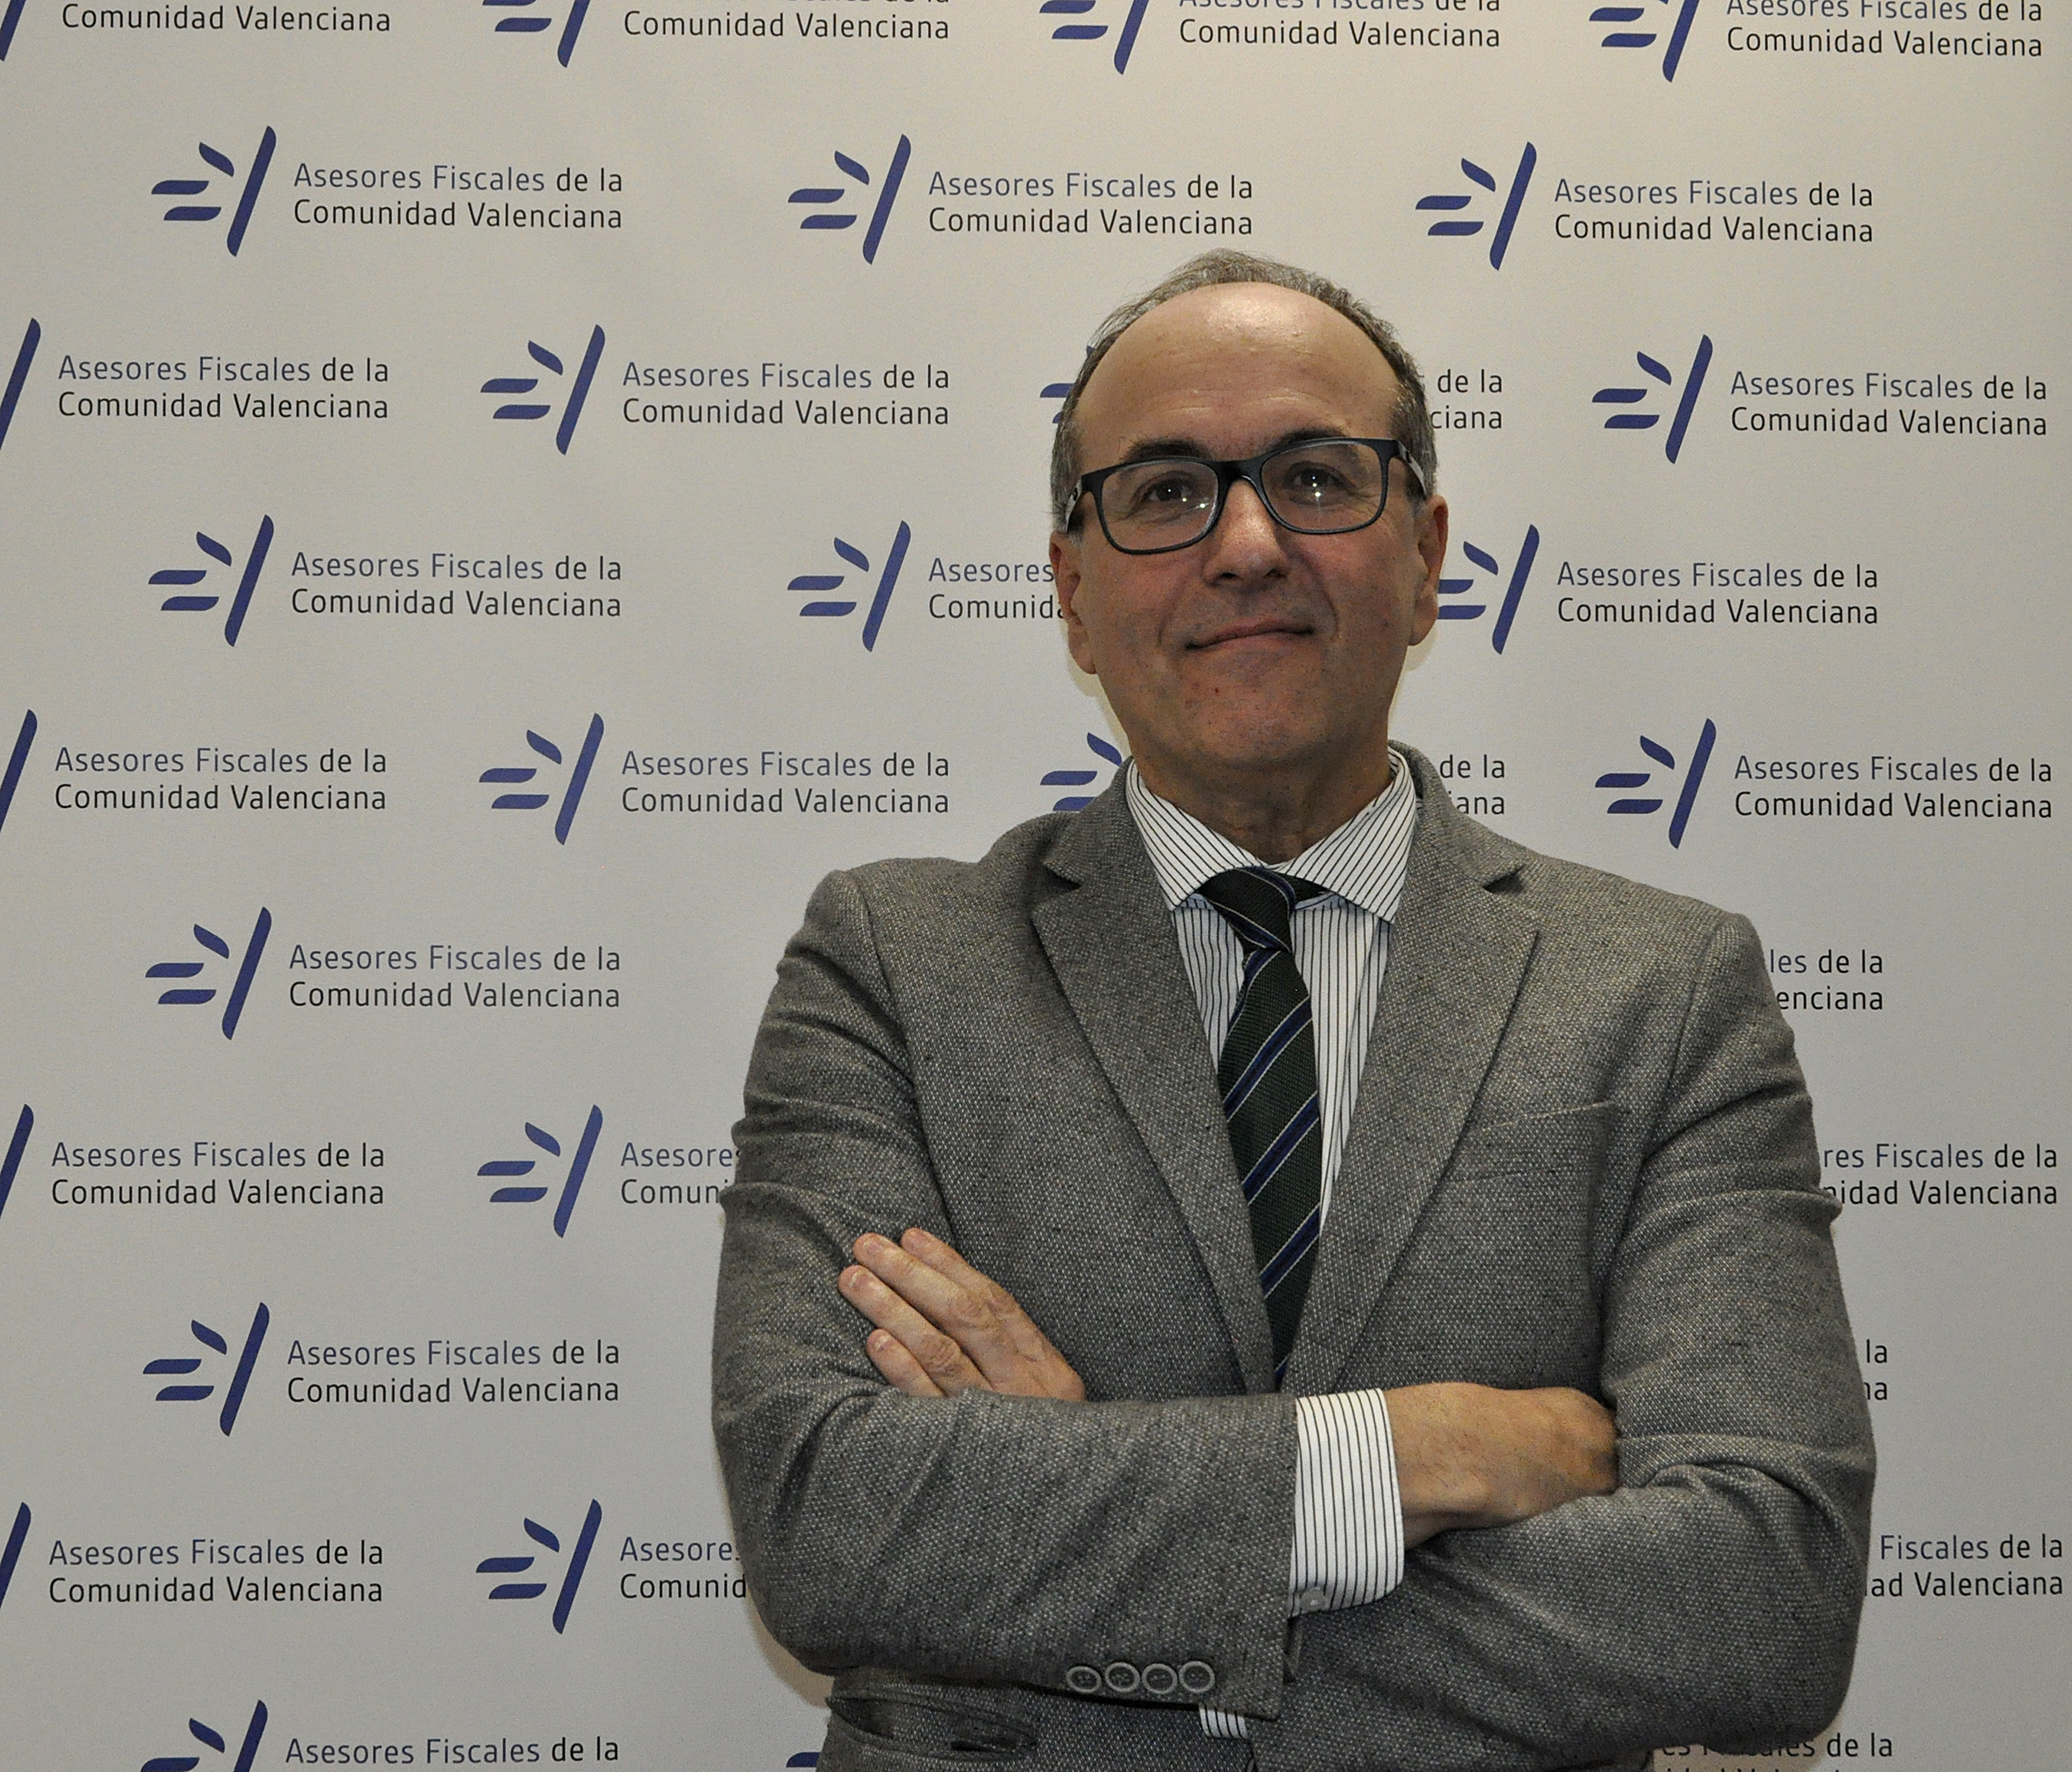 El presidente de los Asesores Fiscales de la Comunidad Valenciana, Luis Chinchilla.